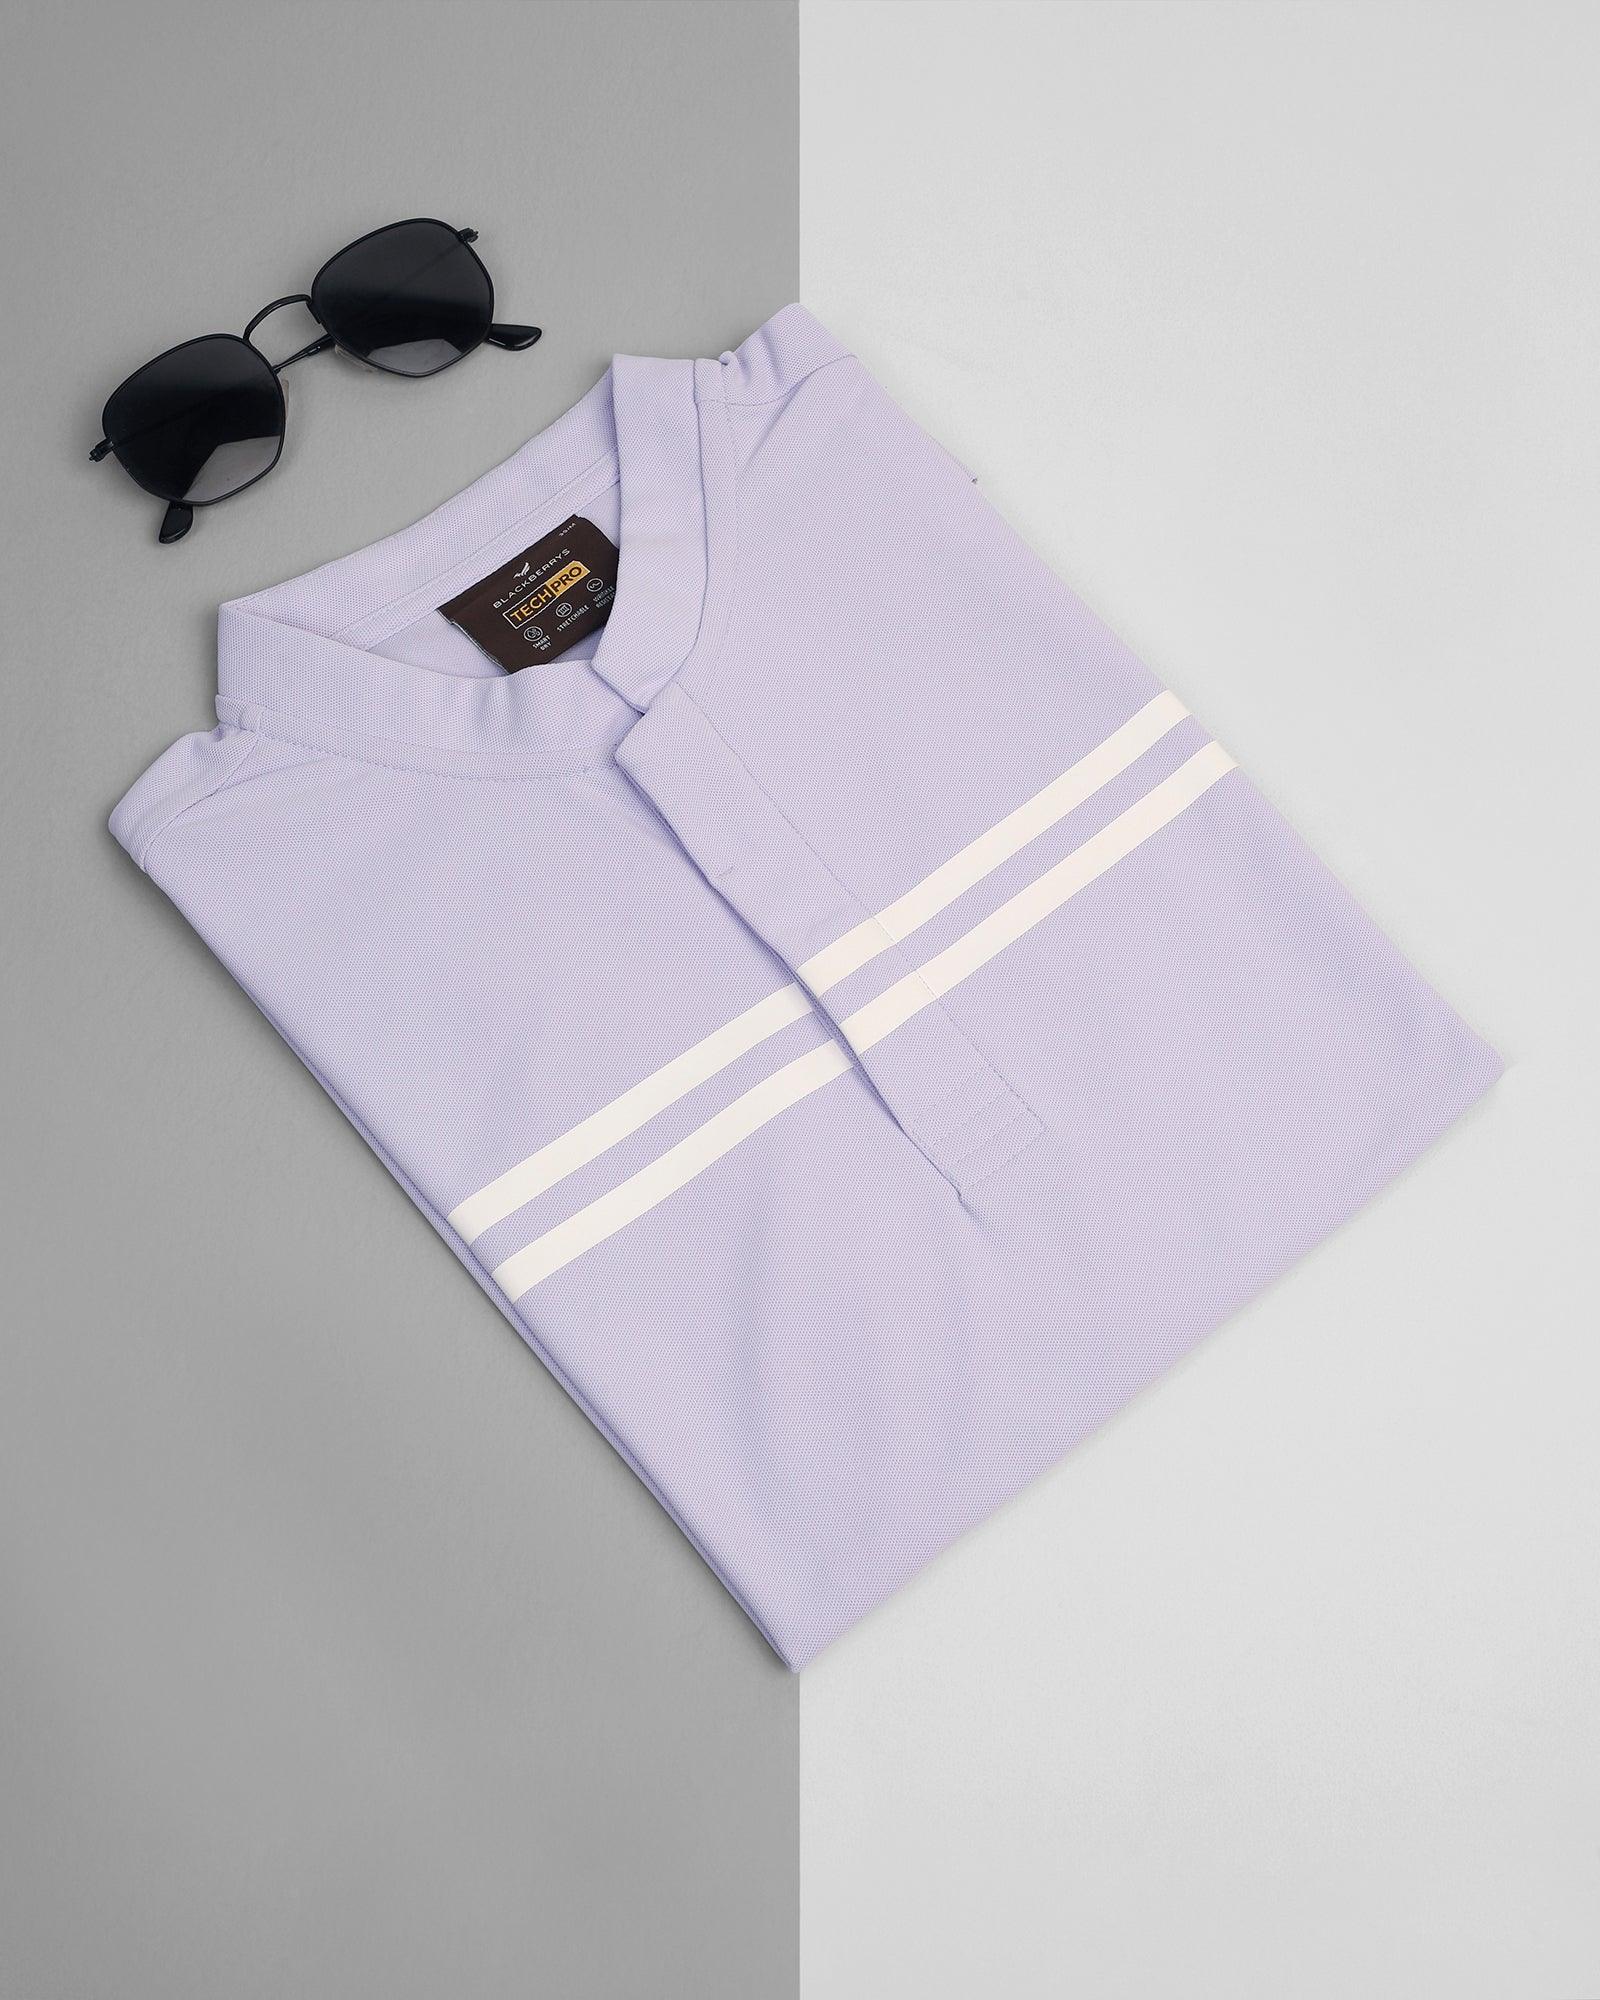 TechPro Polo Lavender Stripe T-Shirt - Saylor